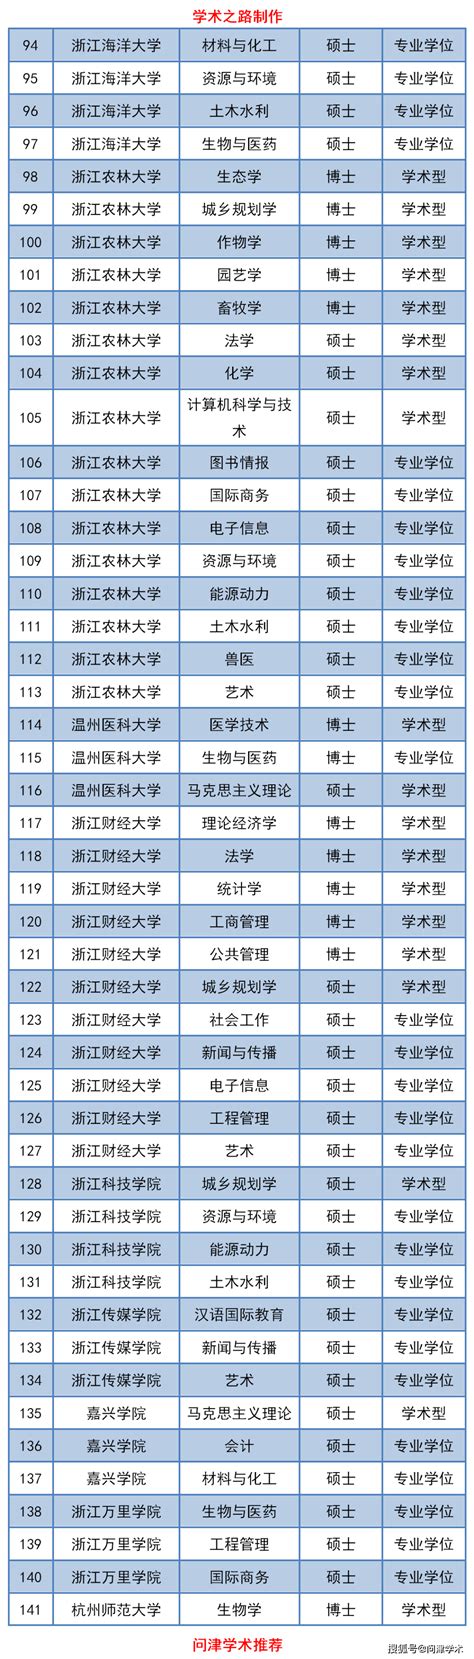 浙江省学位委员会关于2020年学位授权审核推荐名单的公示-搜狐大视野-搜狐新闻